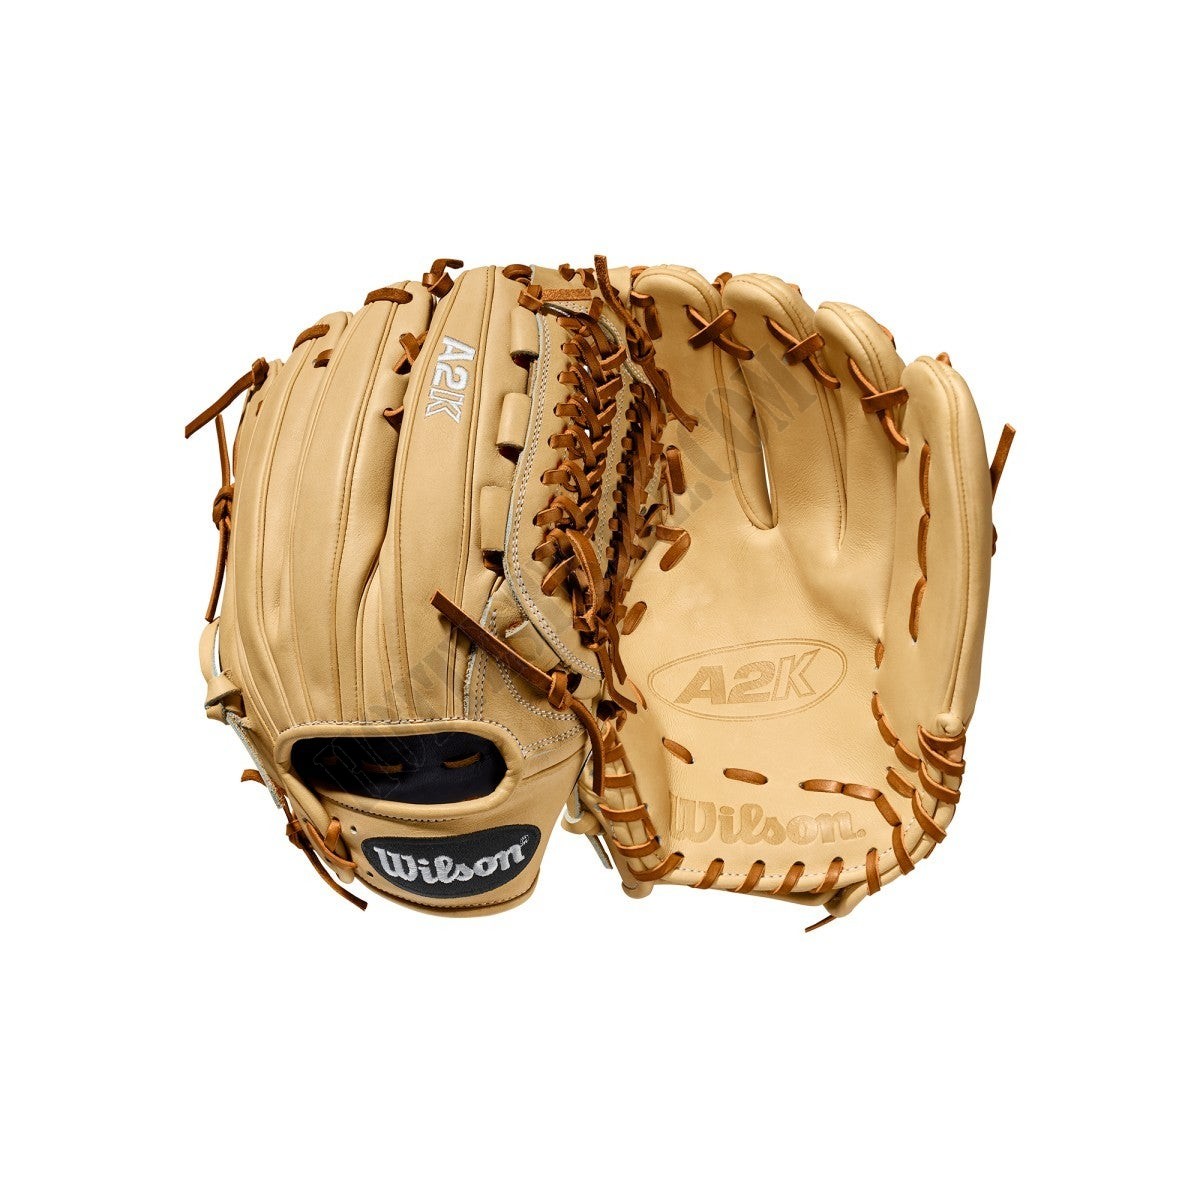 2020 A2K D33 11.75" Pitcher's Baseball Glove ● Wilson Promotions - 2020 A2K D33 11.75" Pitcher's Baseball Glove ● Wilson Promotions